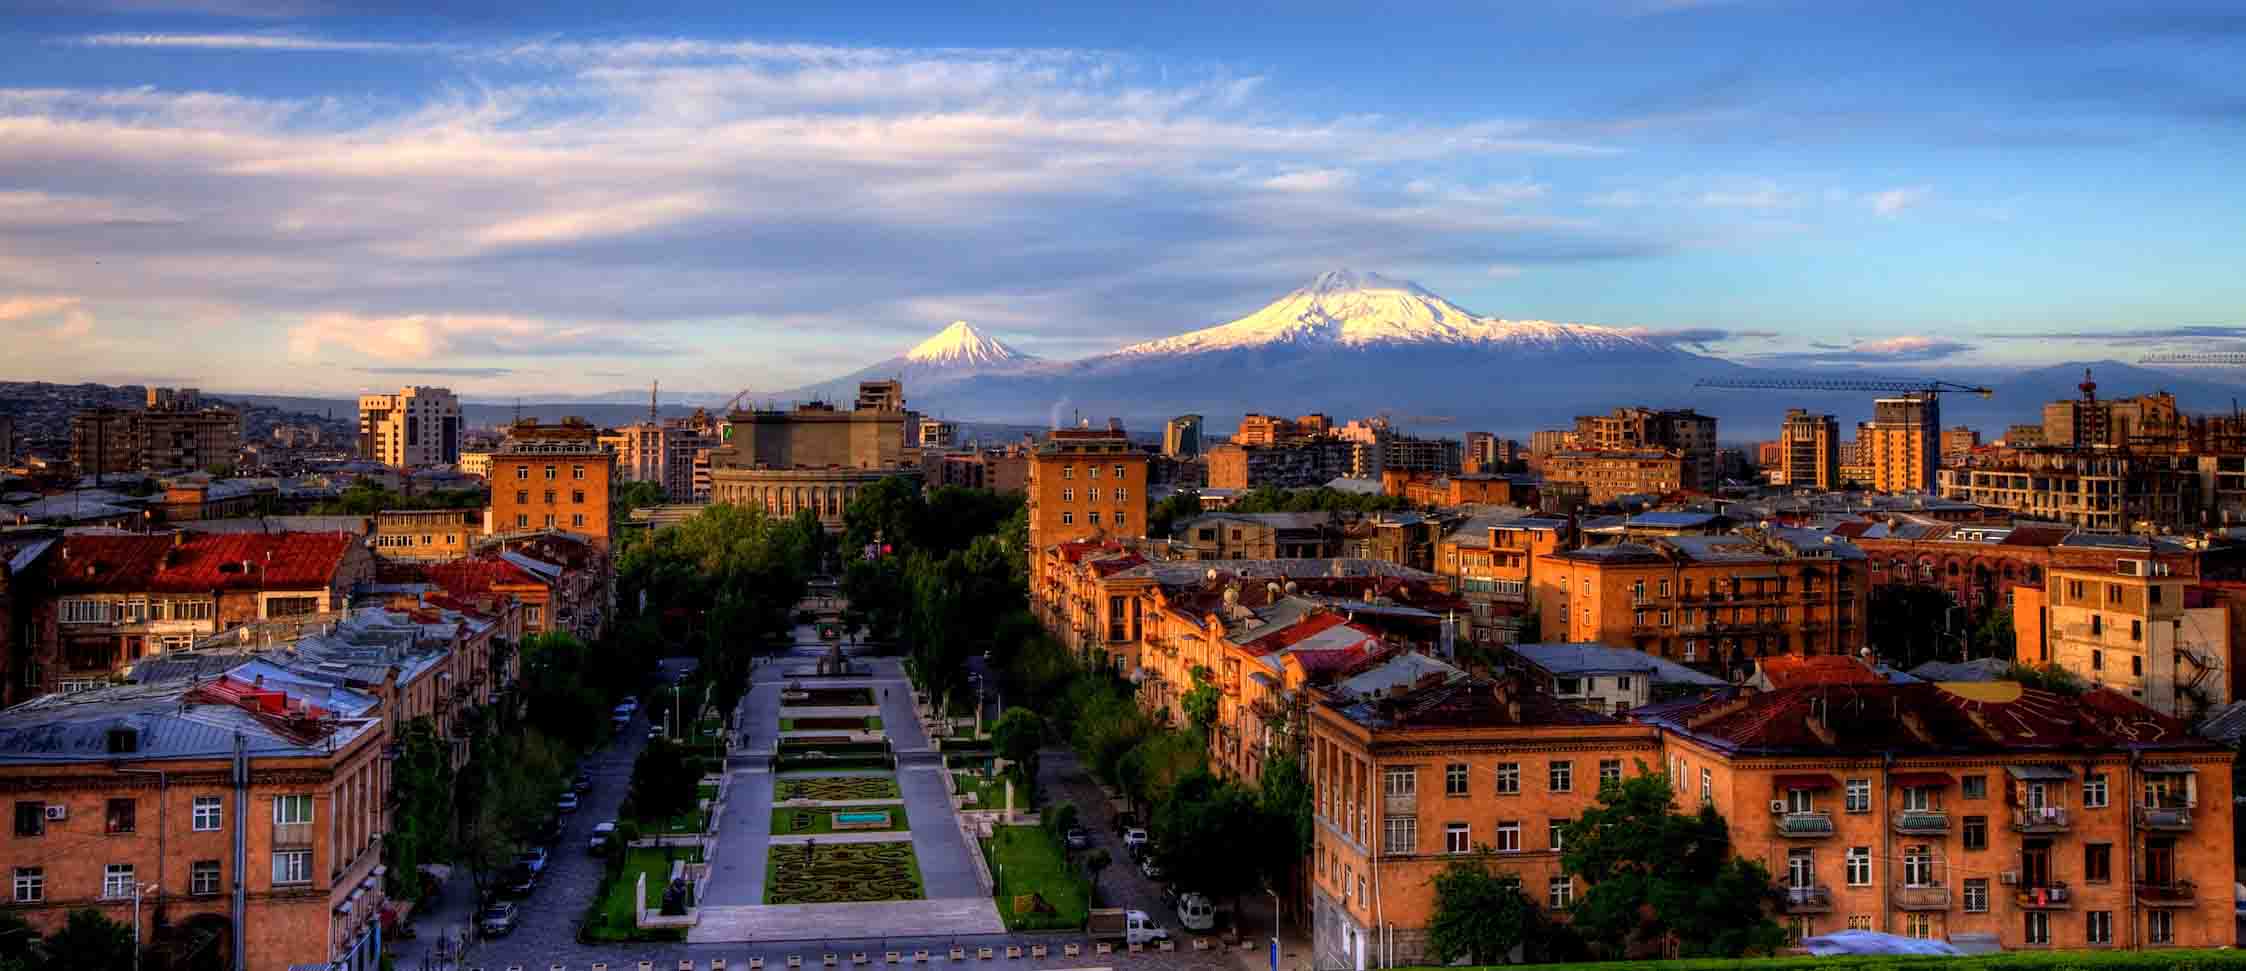 Yerevan, Kota yang Serba Pink